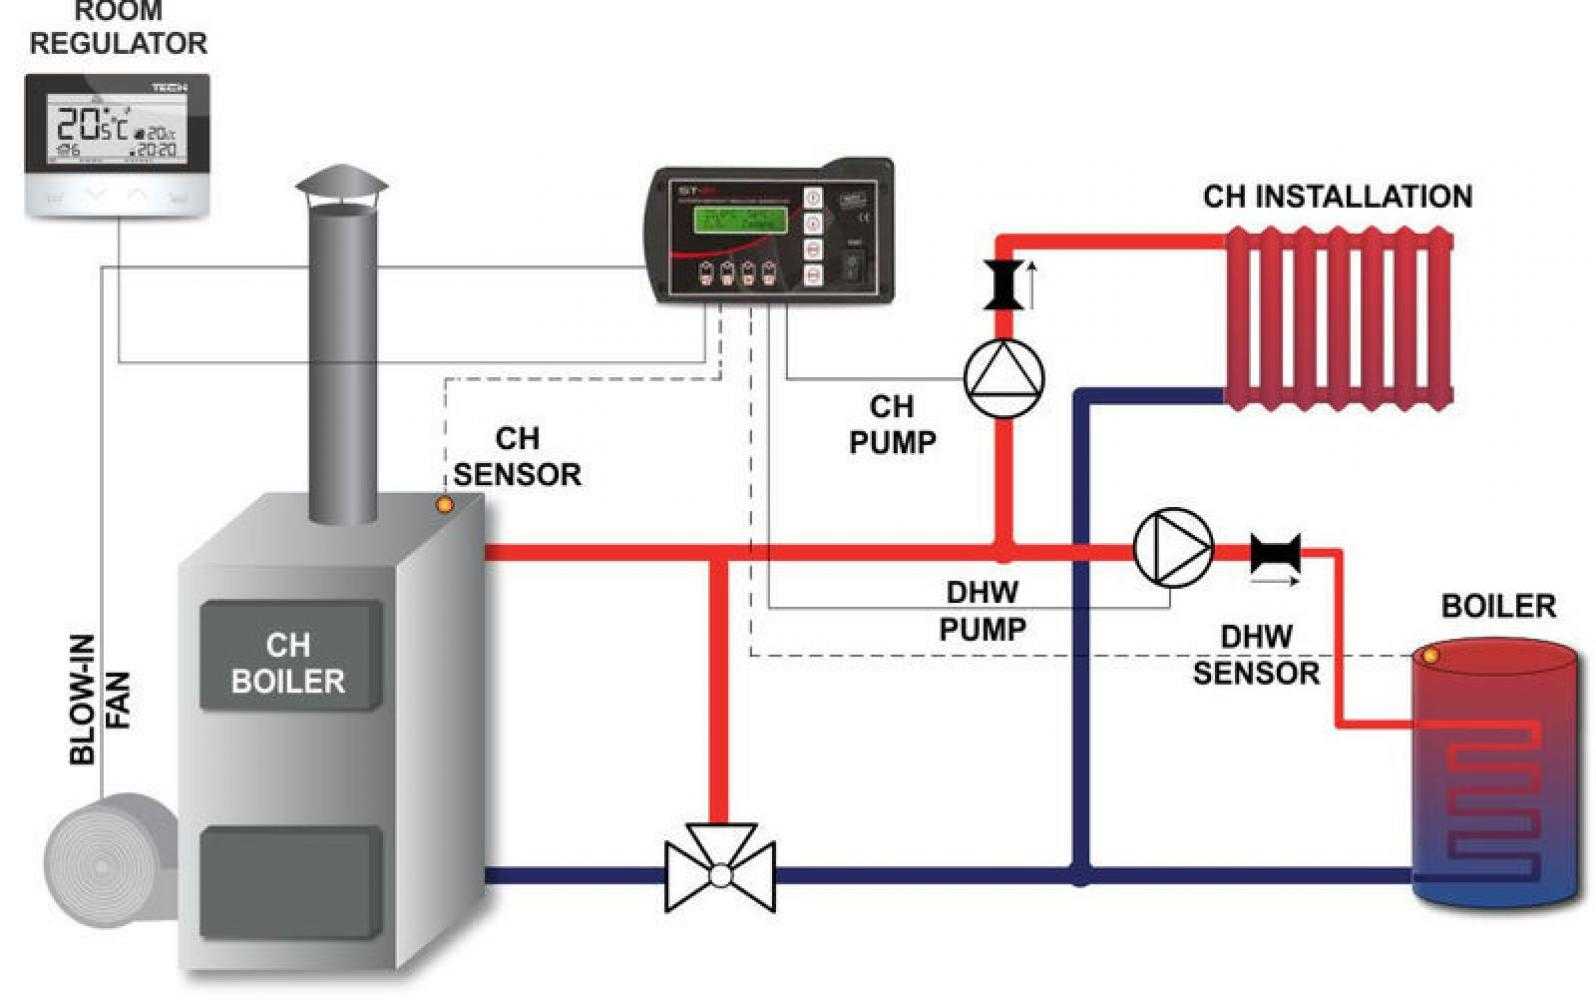 Устройство и принцип работы автоматики для газовых котлов отопления - точка j